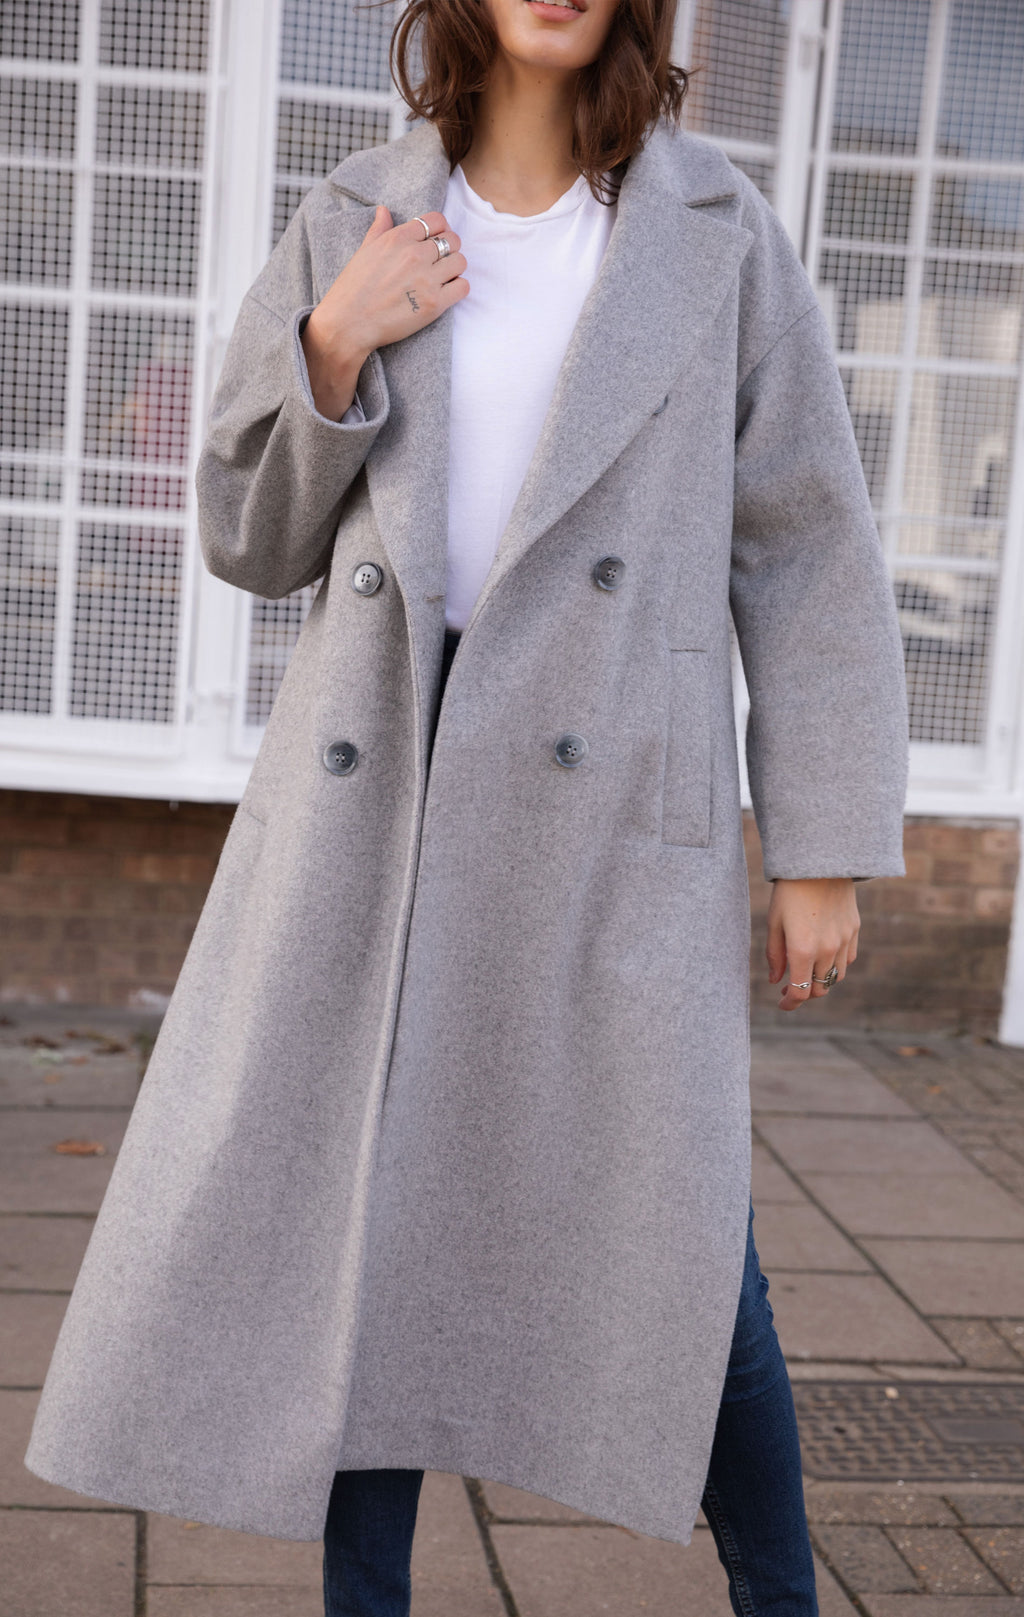 Rae the Brand Katie Longline Wool Blend Coat in grey 